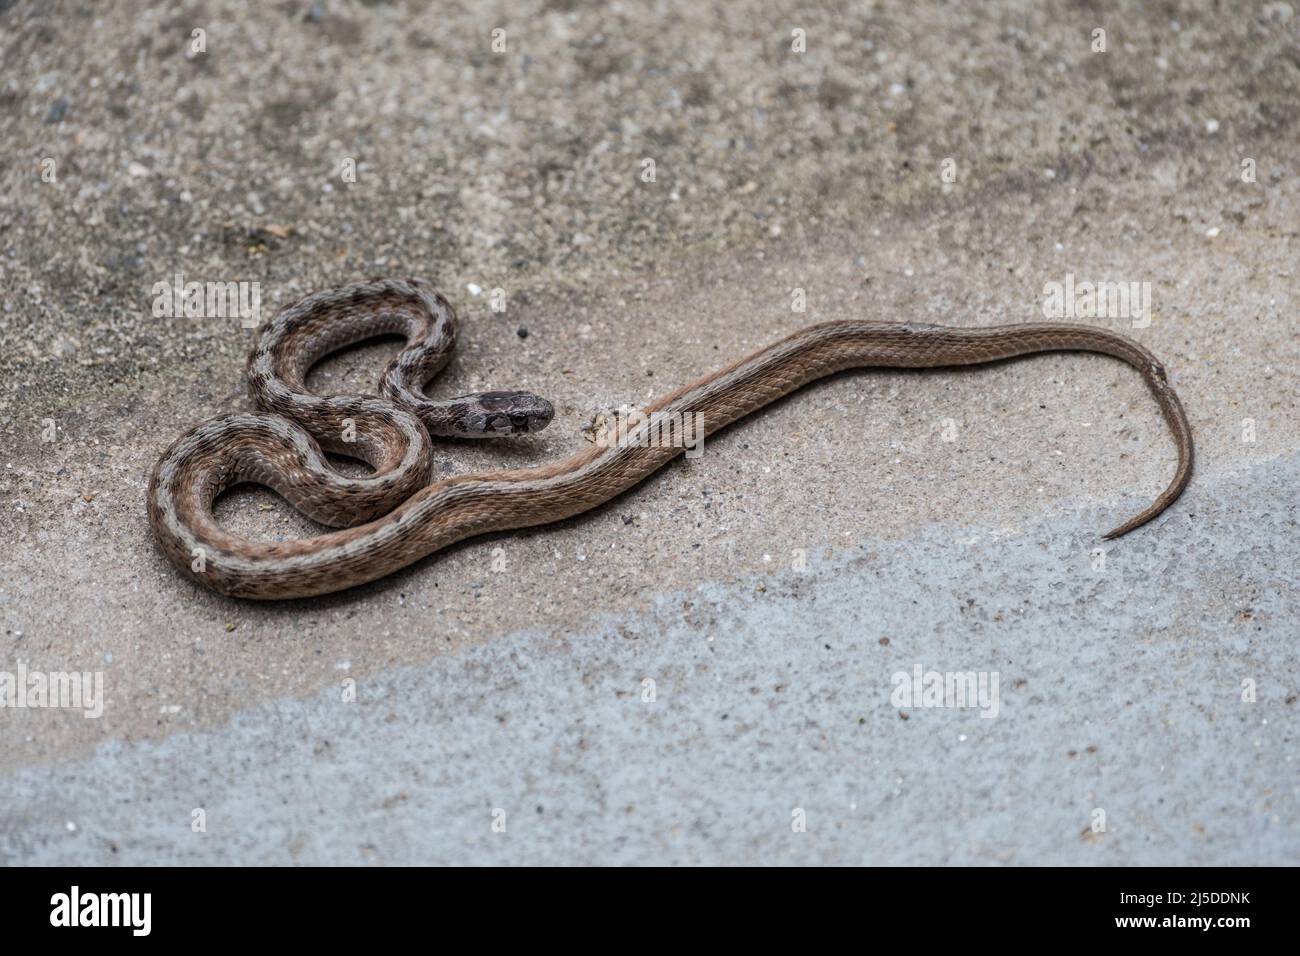 Le serpent brun de DeKay adulte également connu comme un simple serpent brun qui se bronait sur l'allée de ciment a fait couronner un serpent non venimeux avec des taches et un oeil rond Banque D'Images